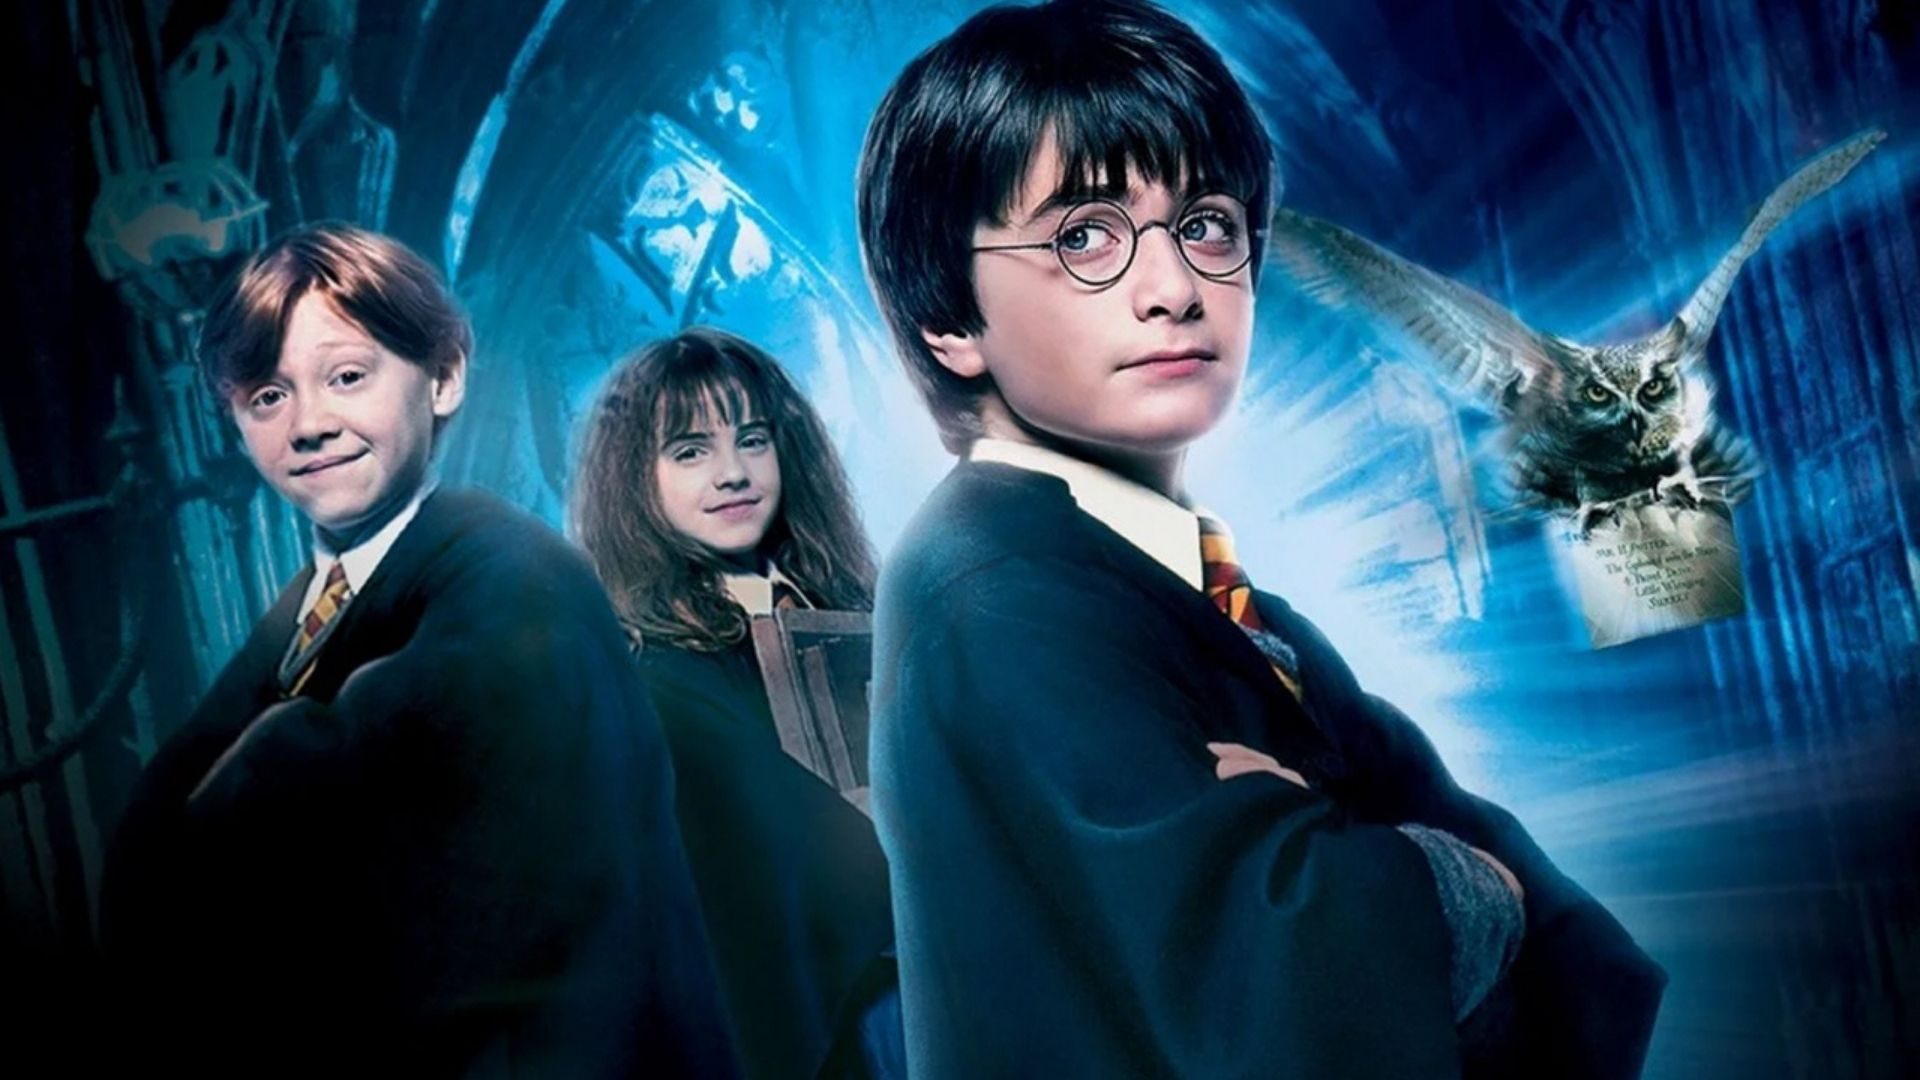 Chris Columbus quer lançar Harry Potter e a Pedra Filosofal com 3 horas de duração